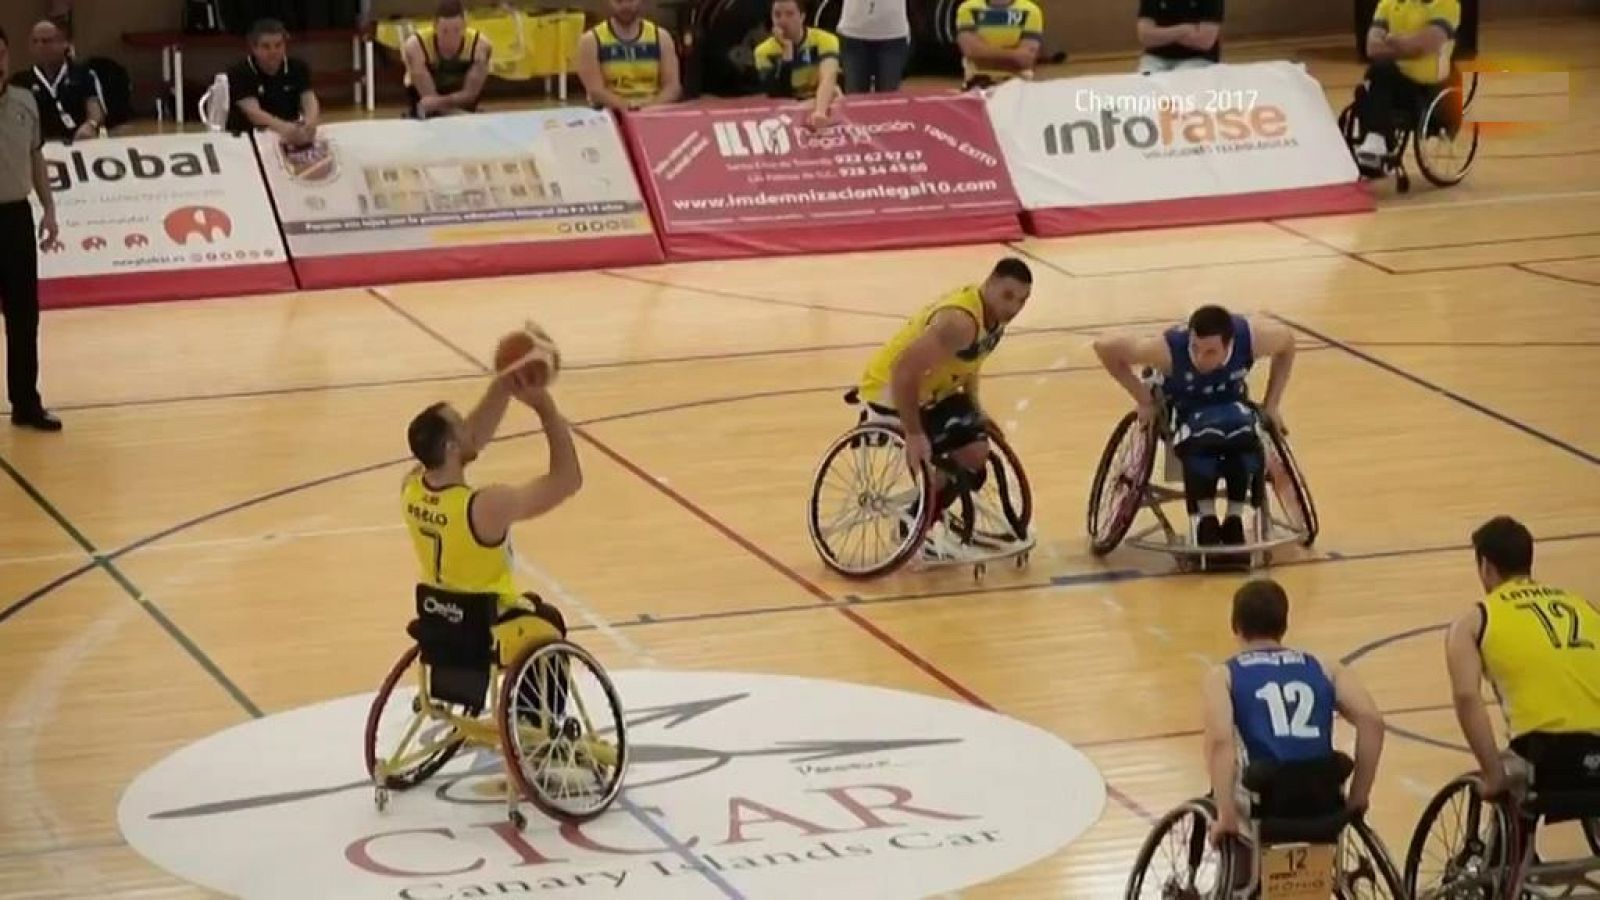  Baloncesto en silla de ruedas - Champions 2017: Ilunion - Mia Briantea. Resumen - RTVE.es